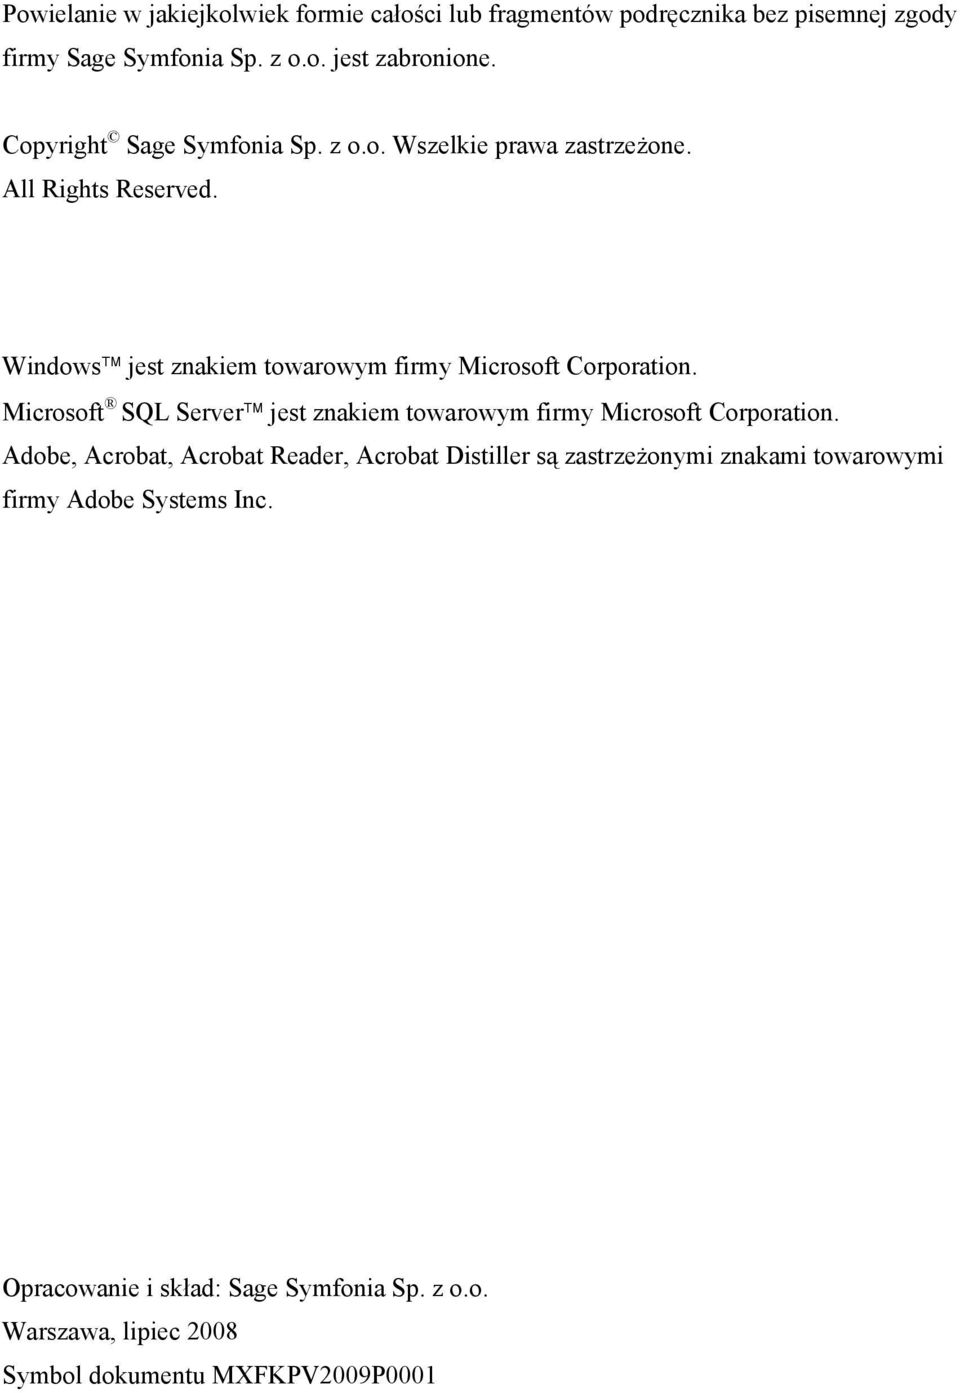 Windows jest znakiem towarowym firmy Microsoft Corporation. Microsoft SQL Server jest znakiem towarowym firmy Microsoft Corporation.